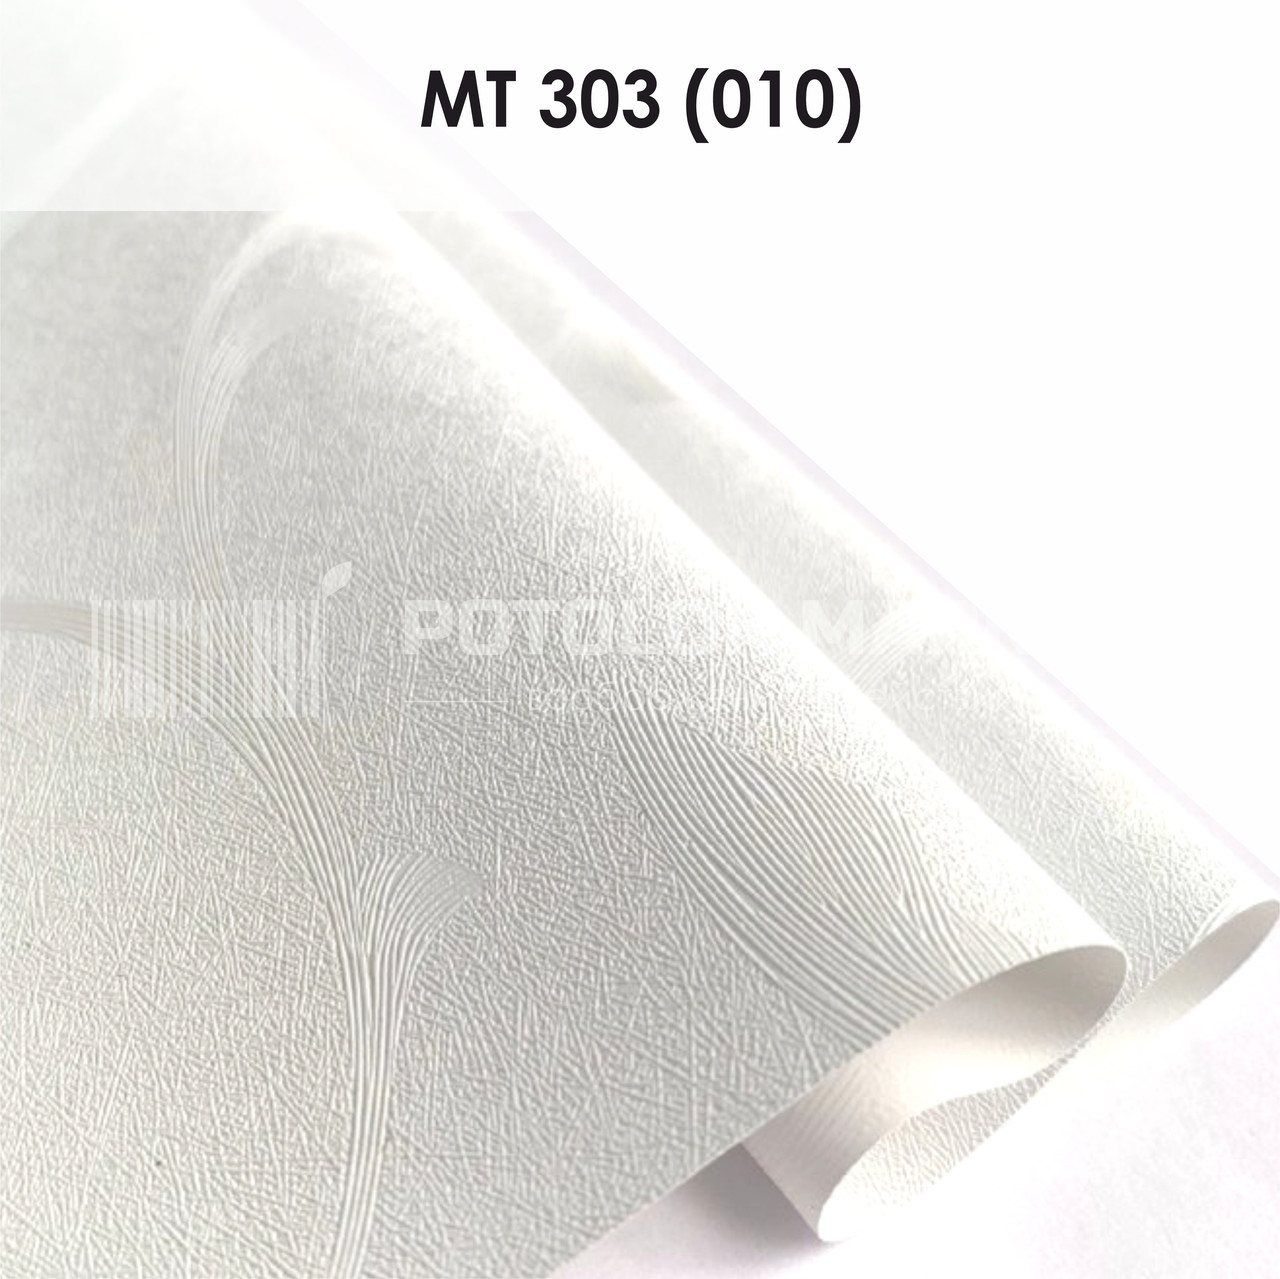 MT 303 (010) "Натхнення" (ширина до 3,2 мп). Текстурна ПВХ плівка